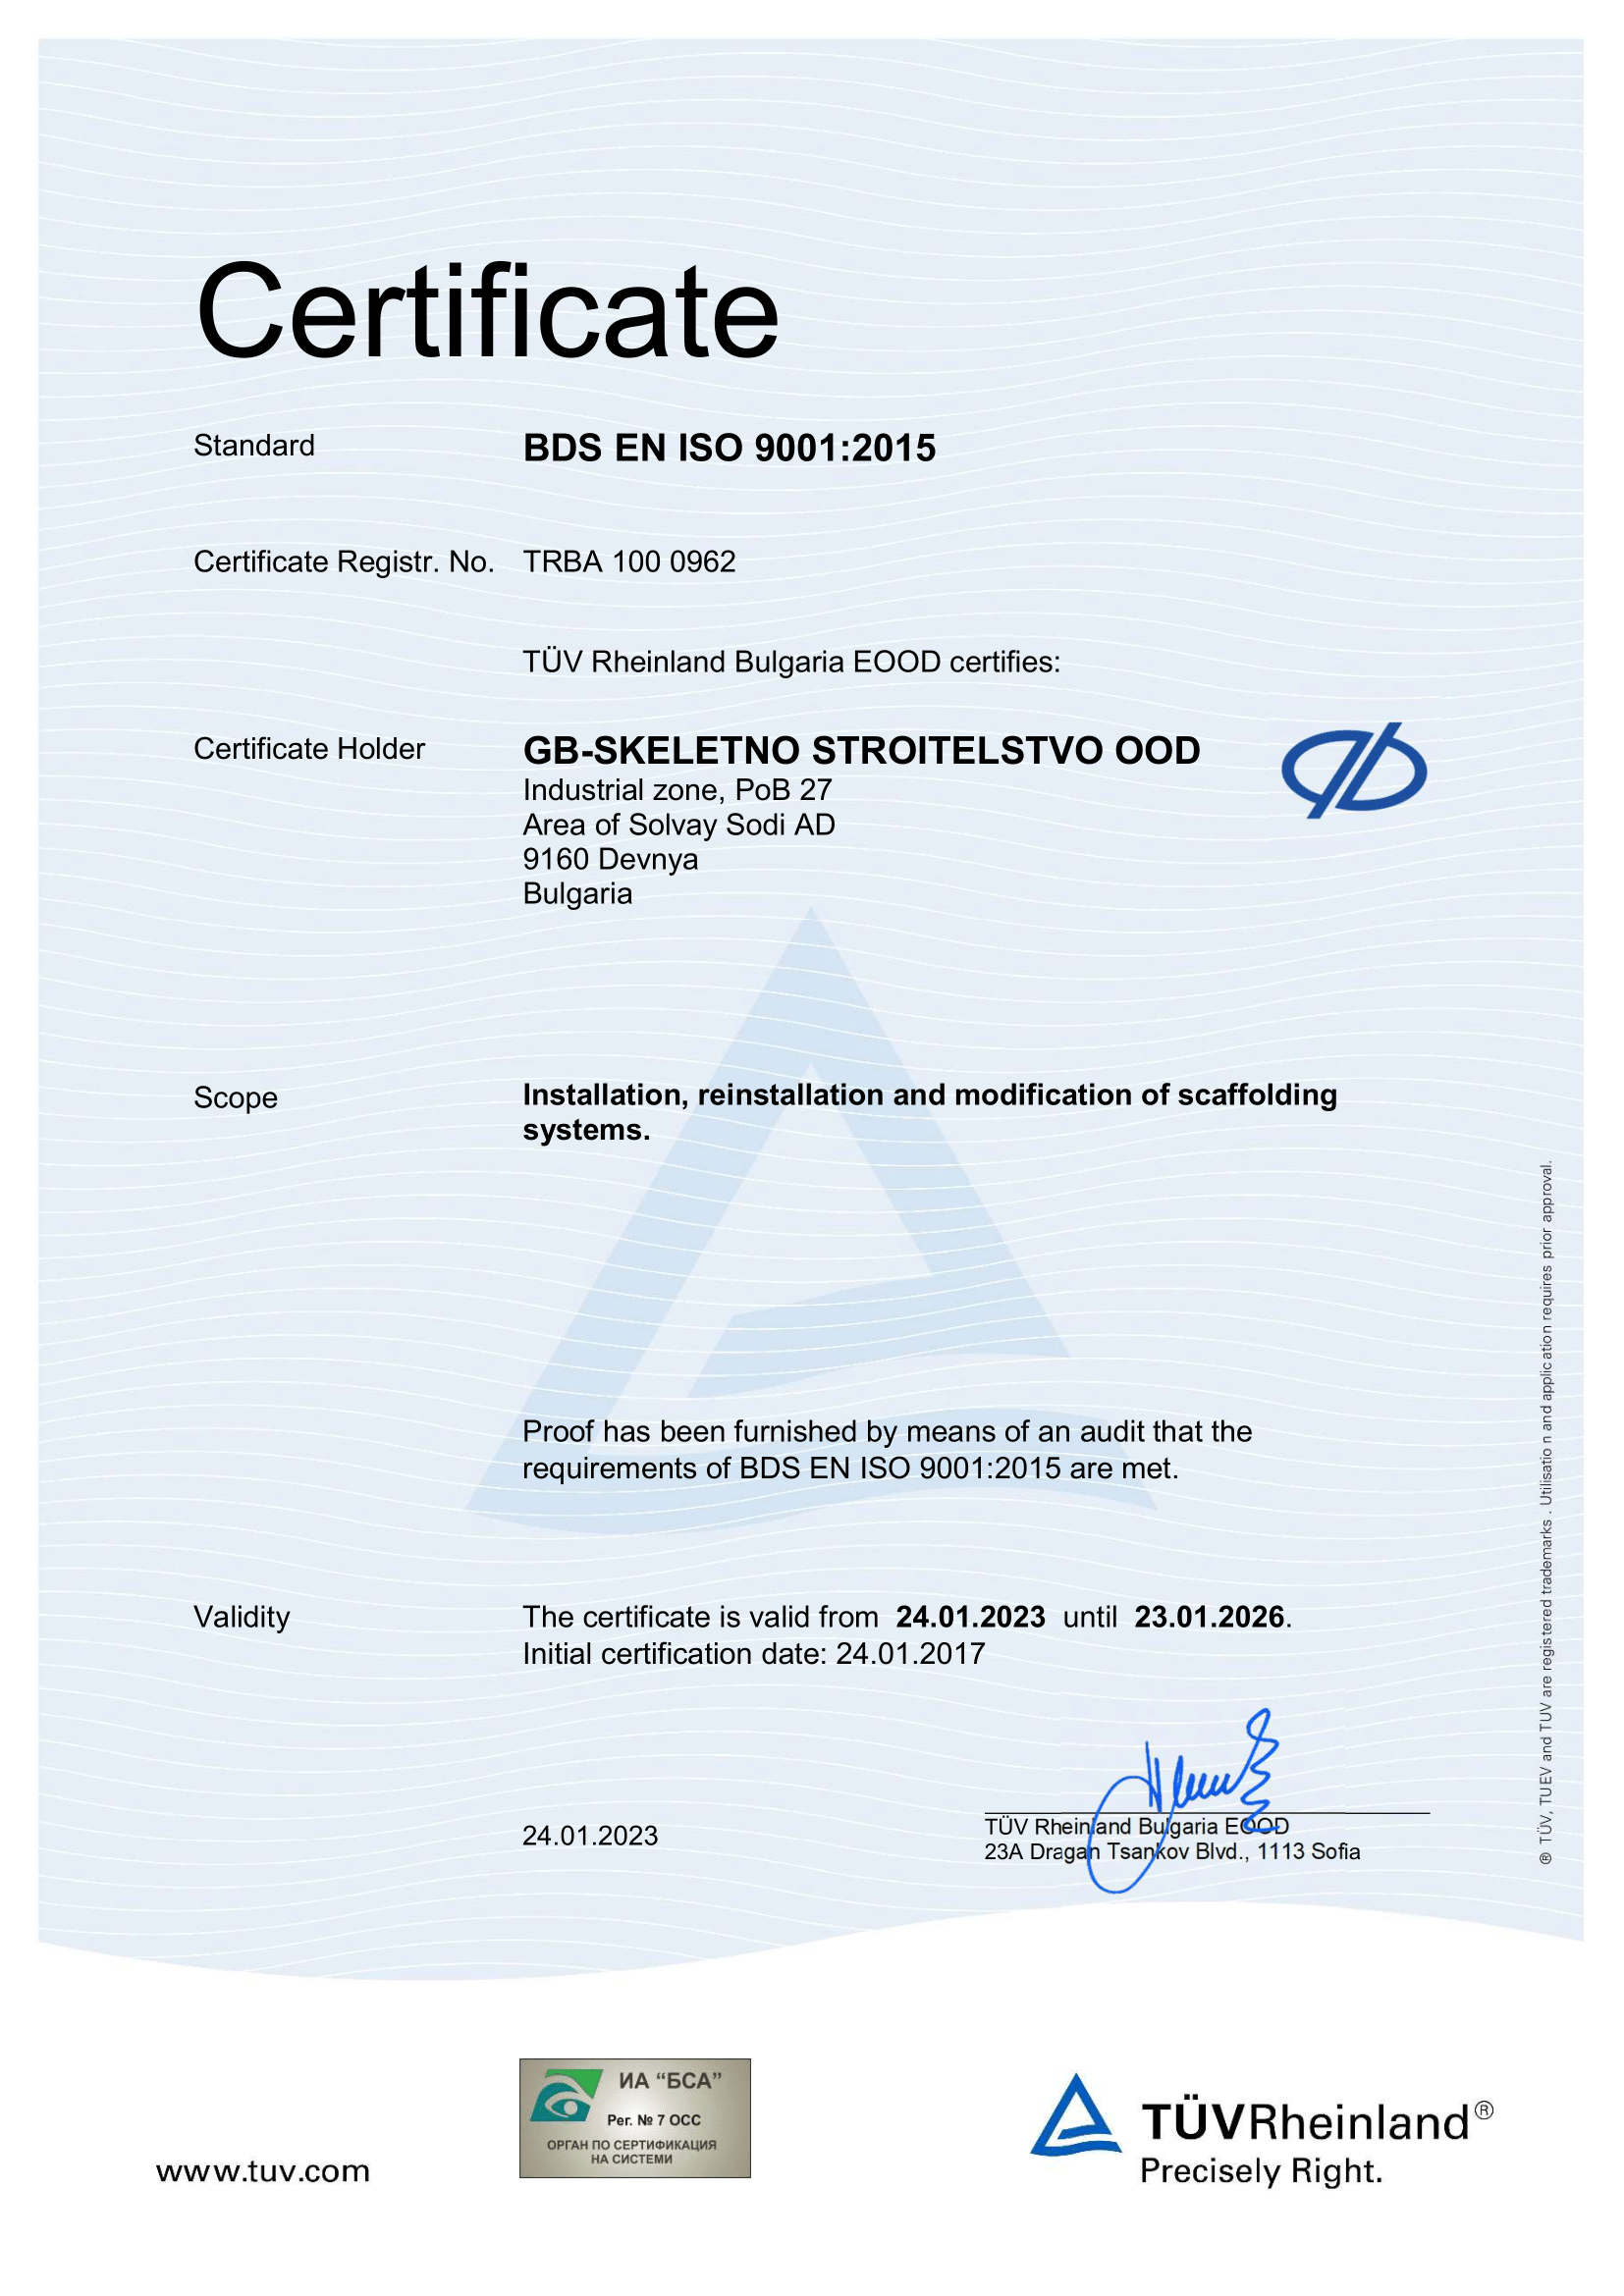 Certificate 9001:2015